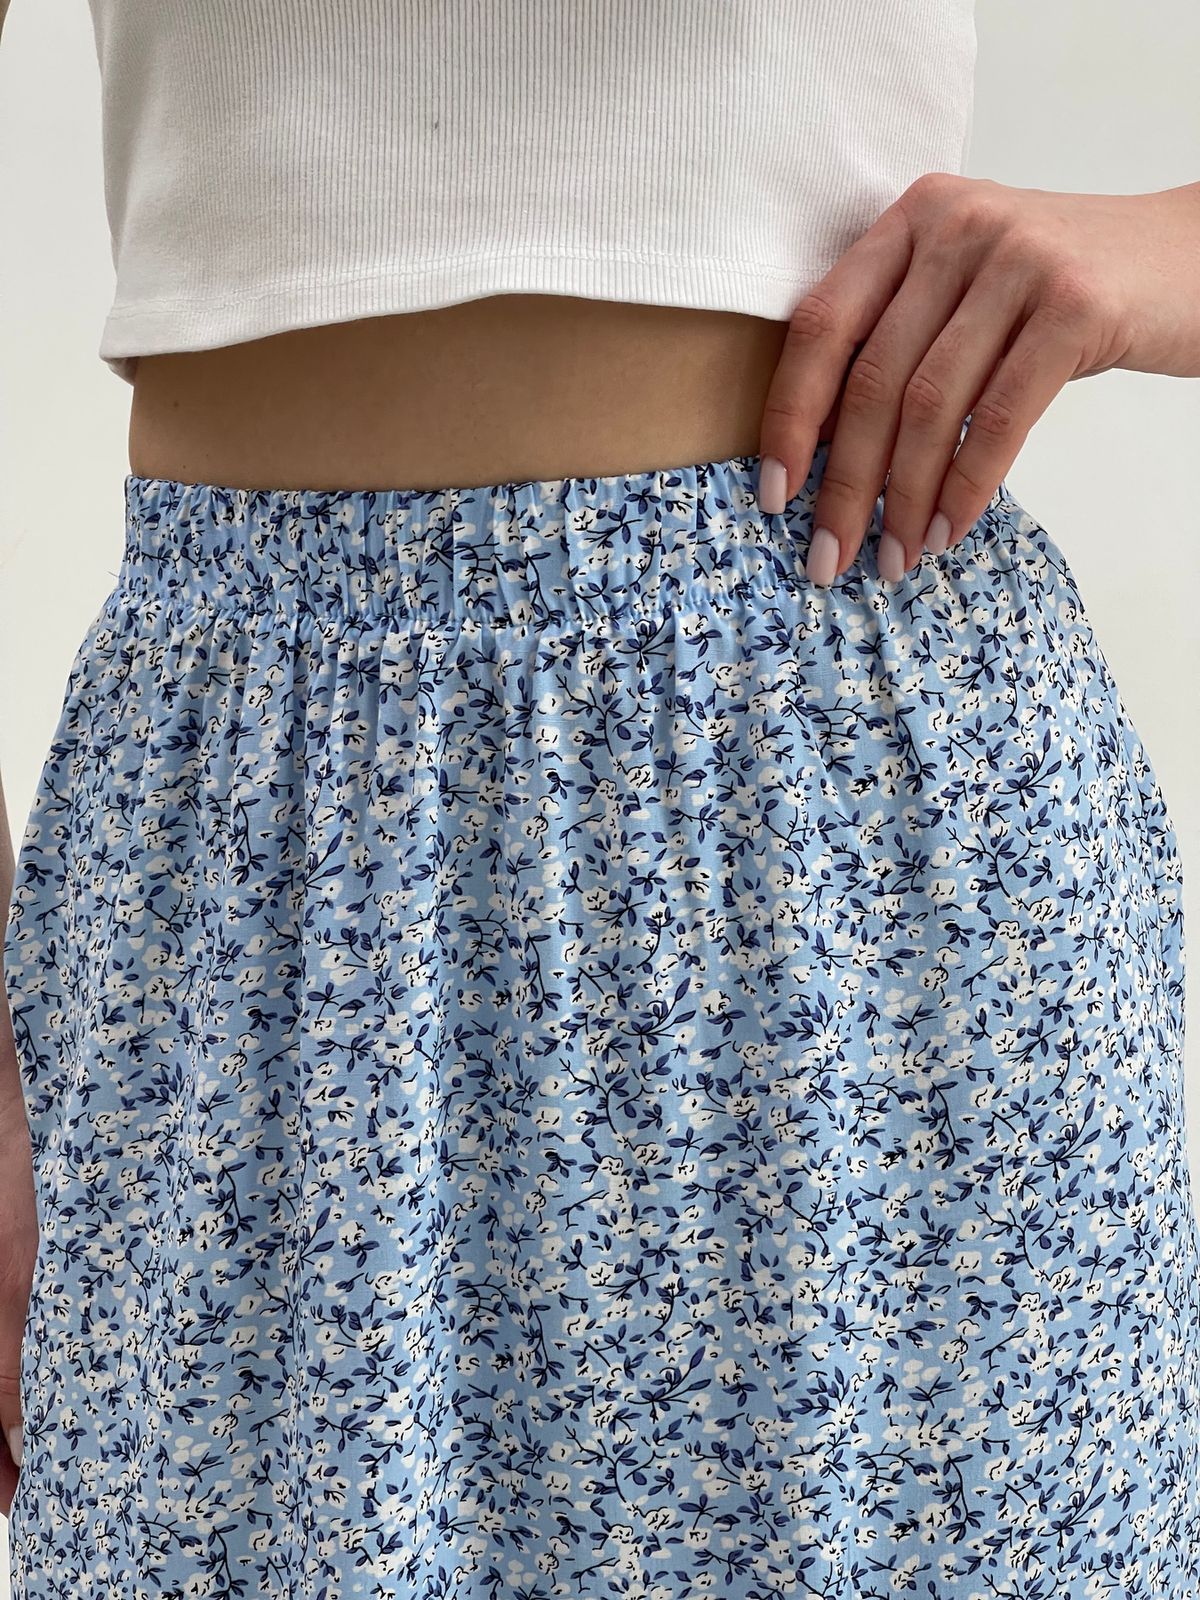 Купить Длинная женская юбка с разрезом в цветочек голубая Merlini Лакко 400001265 размер 42-44 (S-M) в интернет-магазине